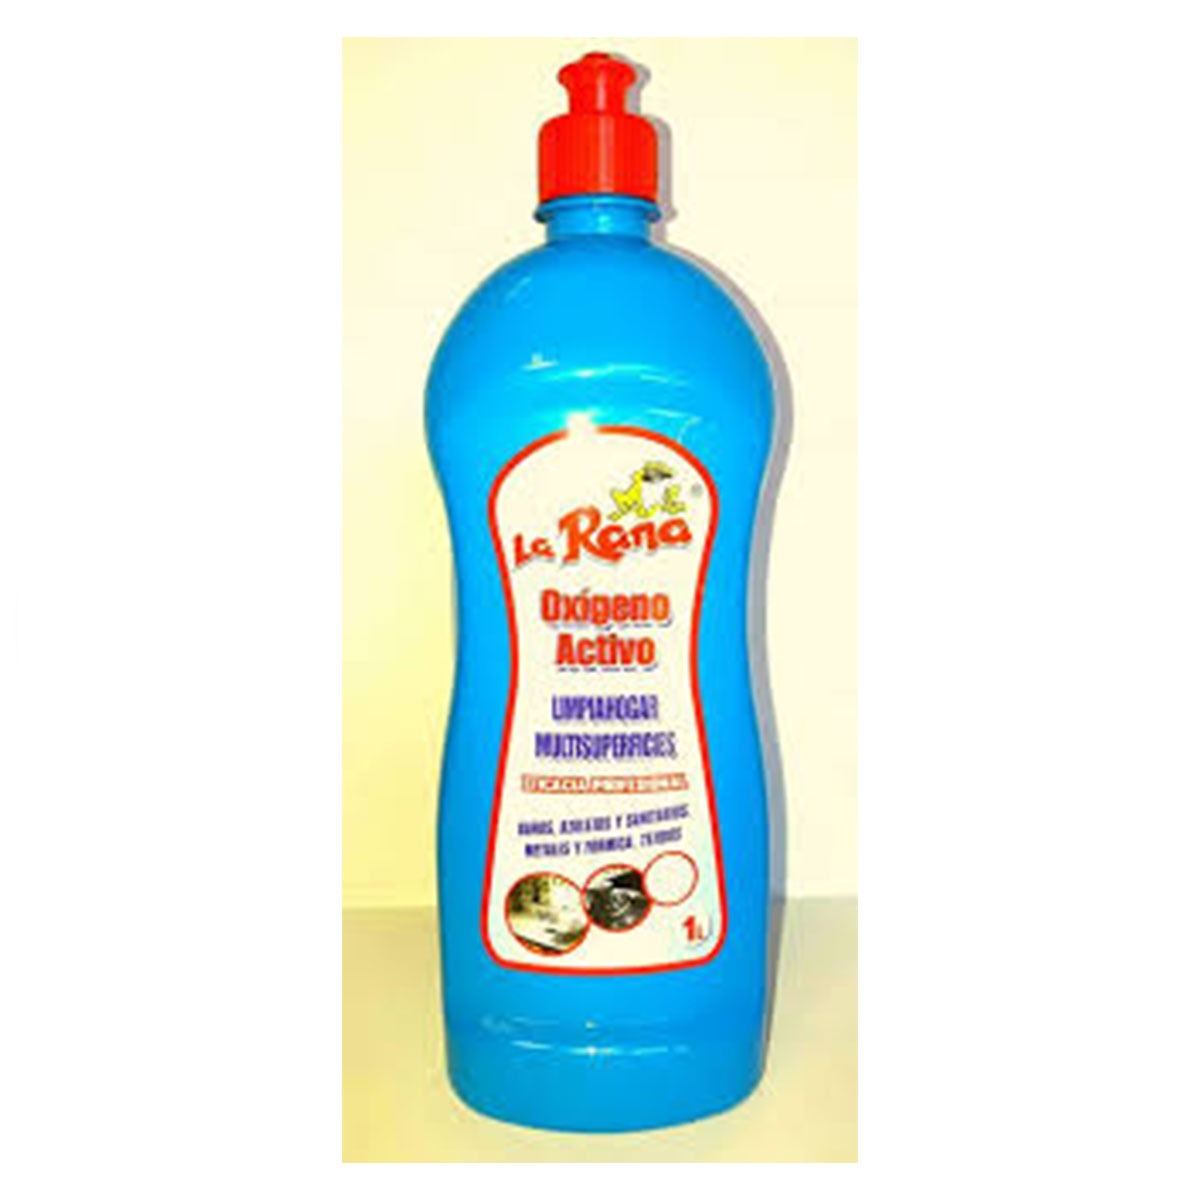 Detergente oxigeno activo - DETYCEL Productos de limpieza